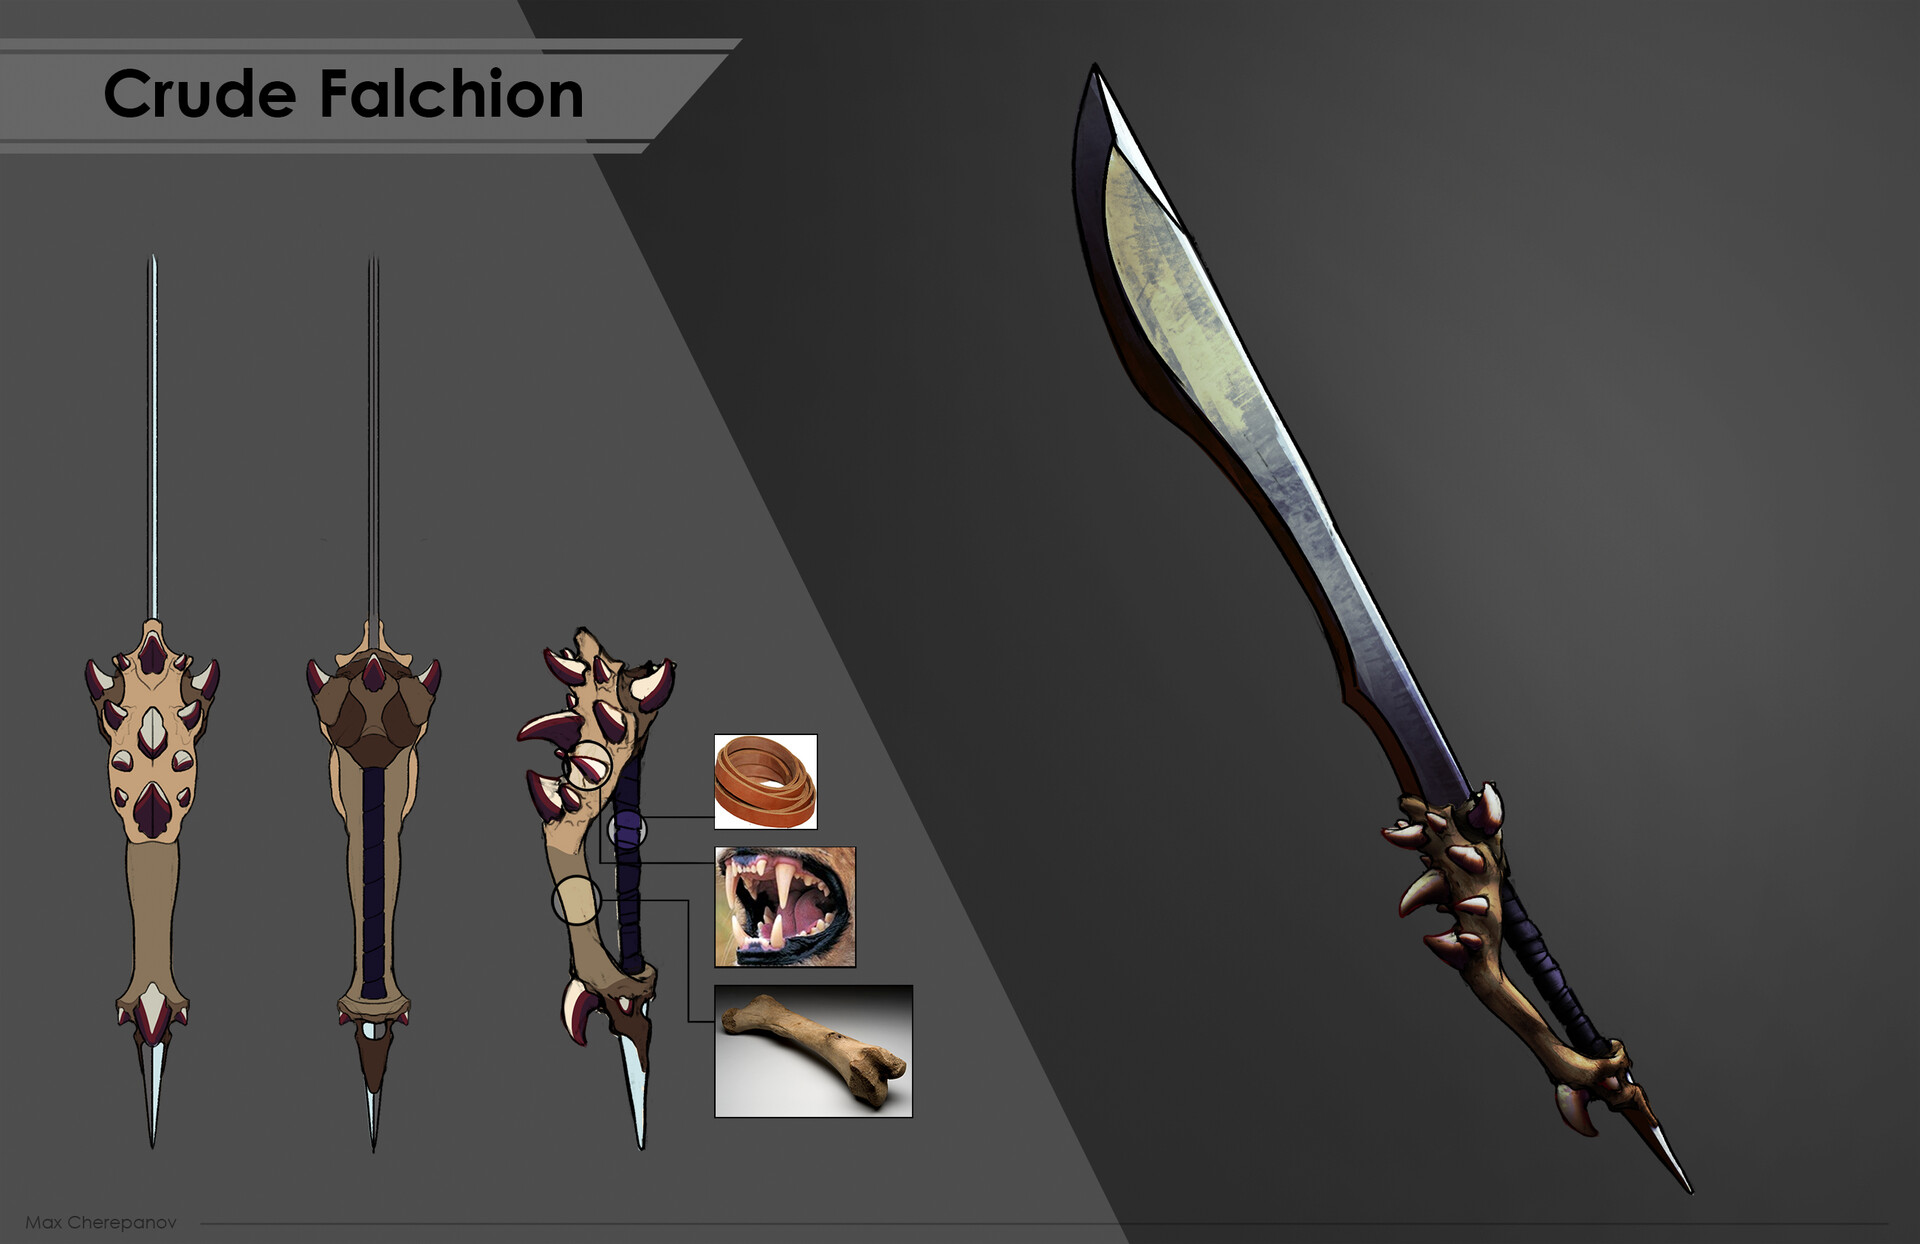 arcuz 2 sword axe or falchion